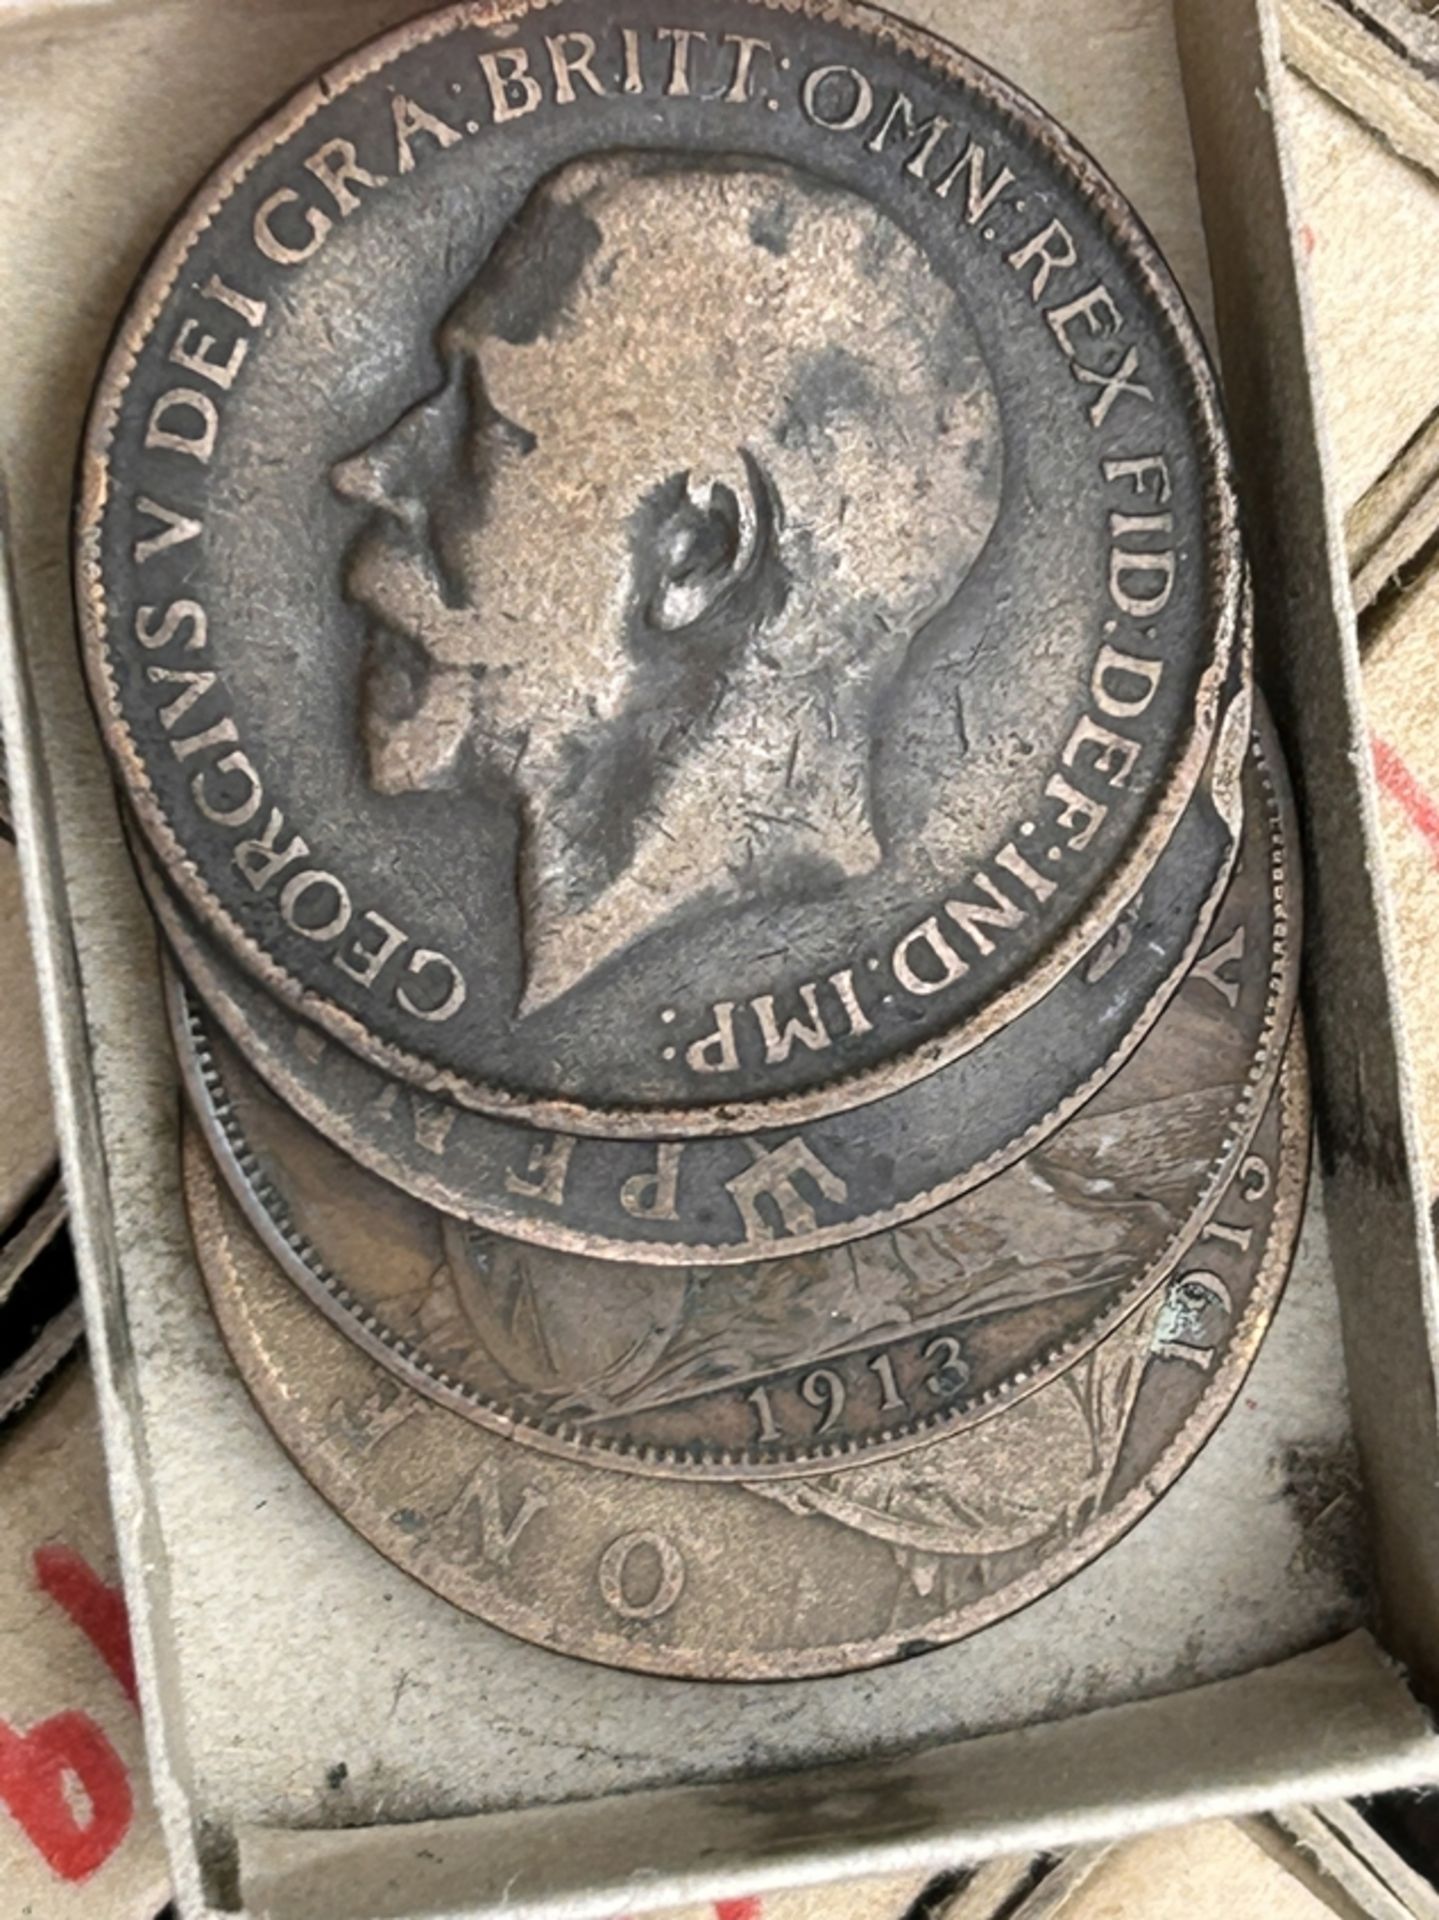 Zigarrenschachtel mit 1 Penny Münzen, ca, 1897 bis 1915, in machen Streichholzschachteln bis zu vie - Image 5 of 5